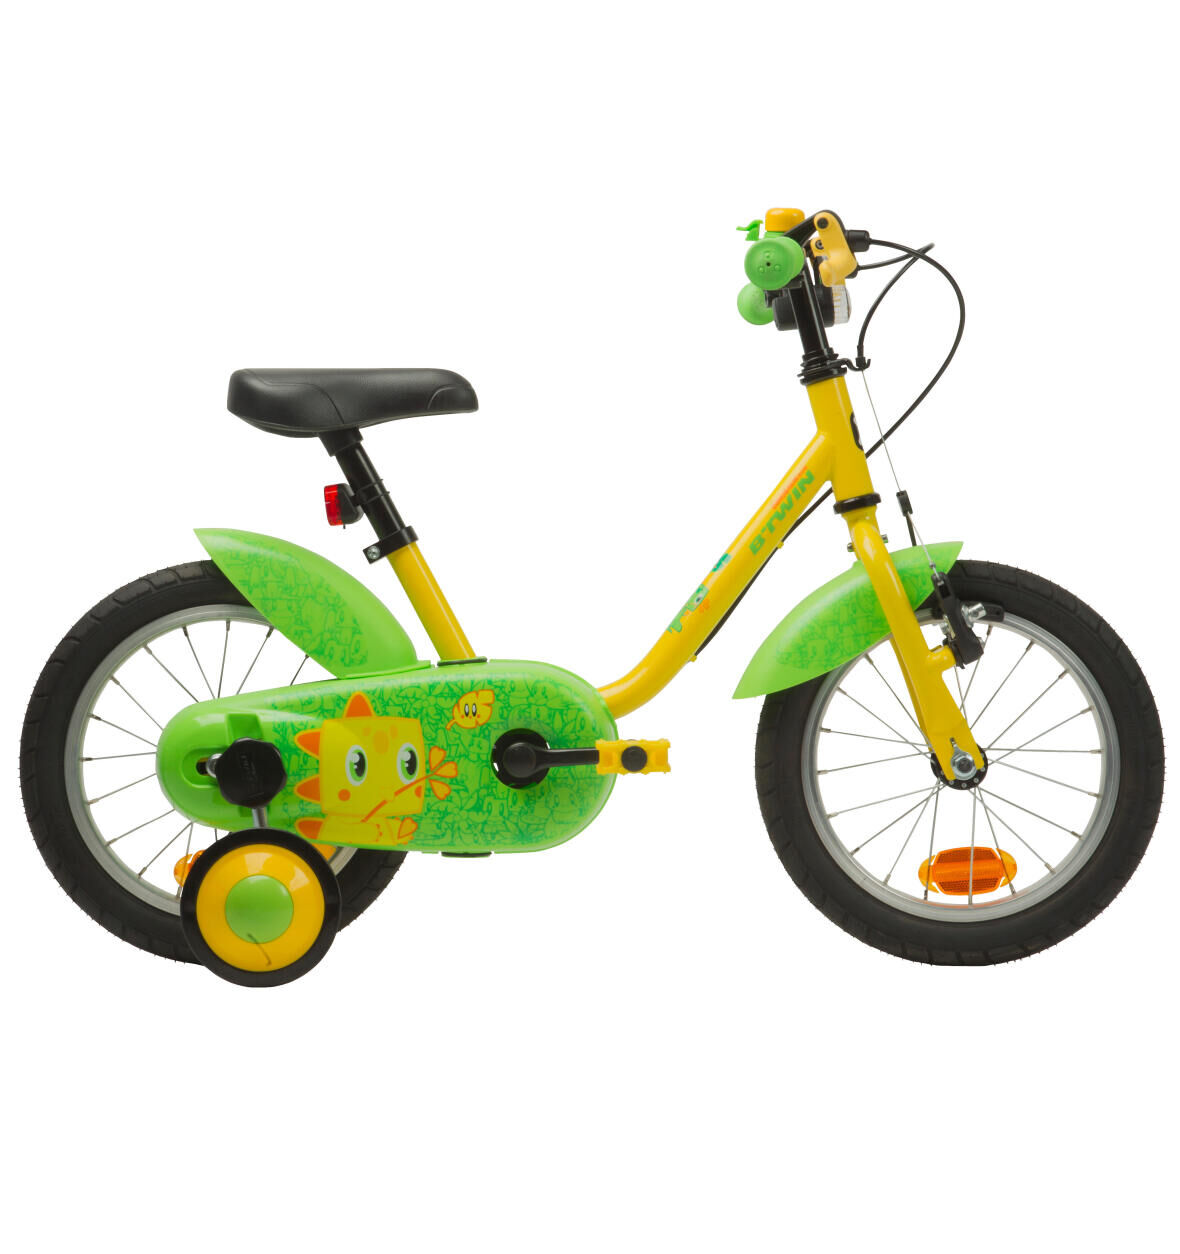 Fahrrad_14_pouces_vert_jaune